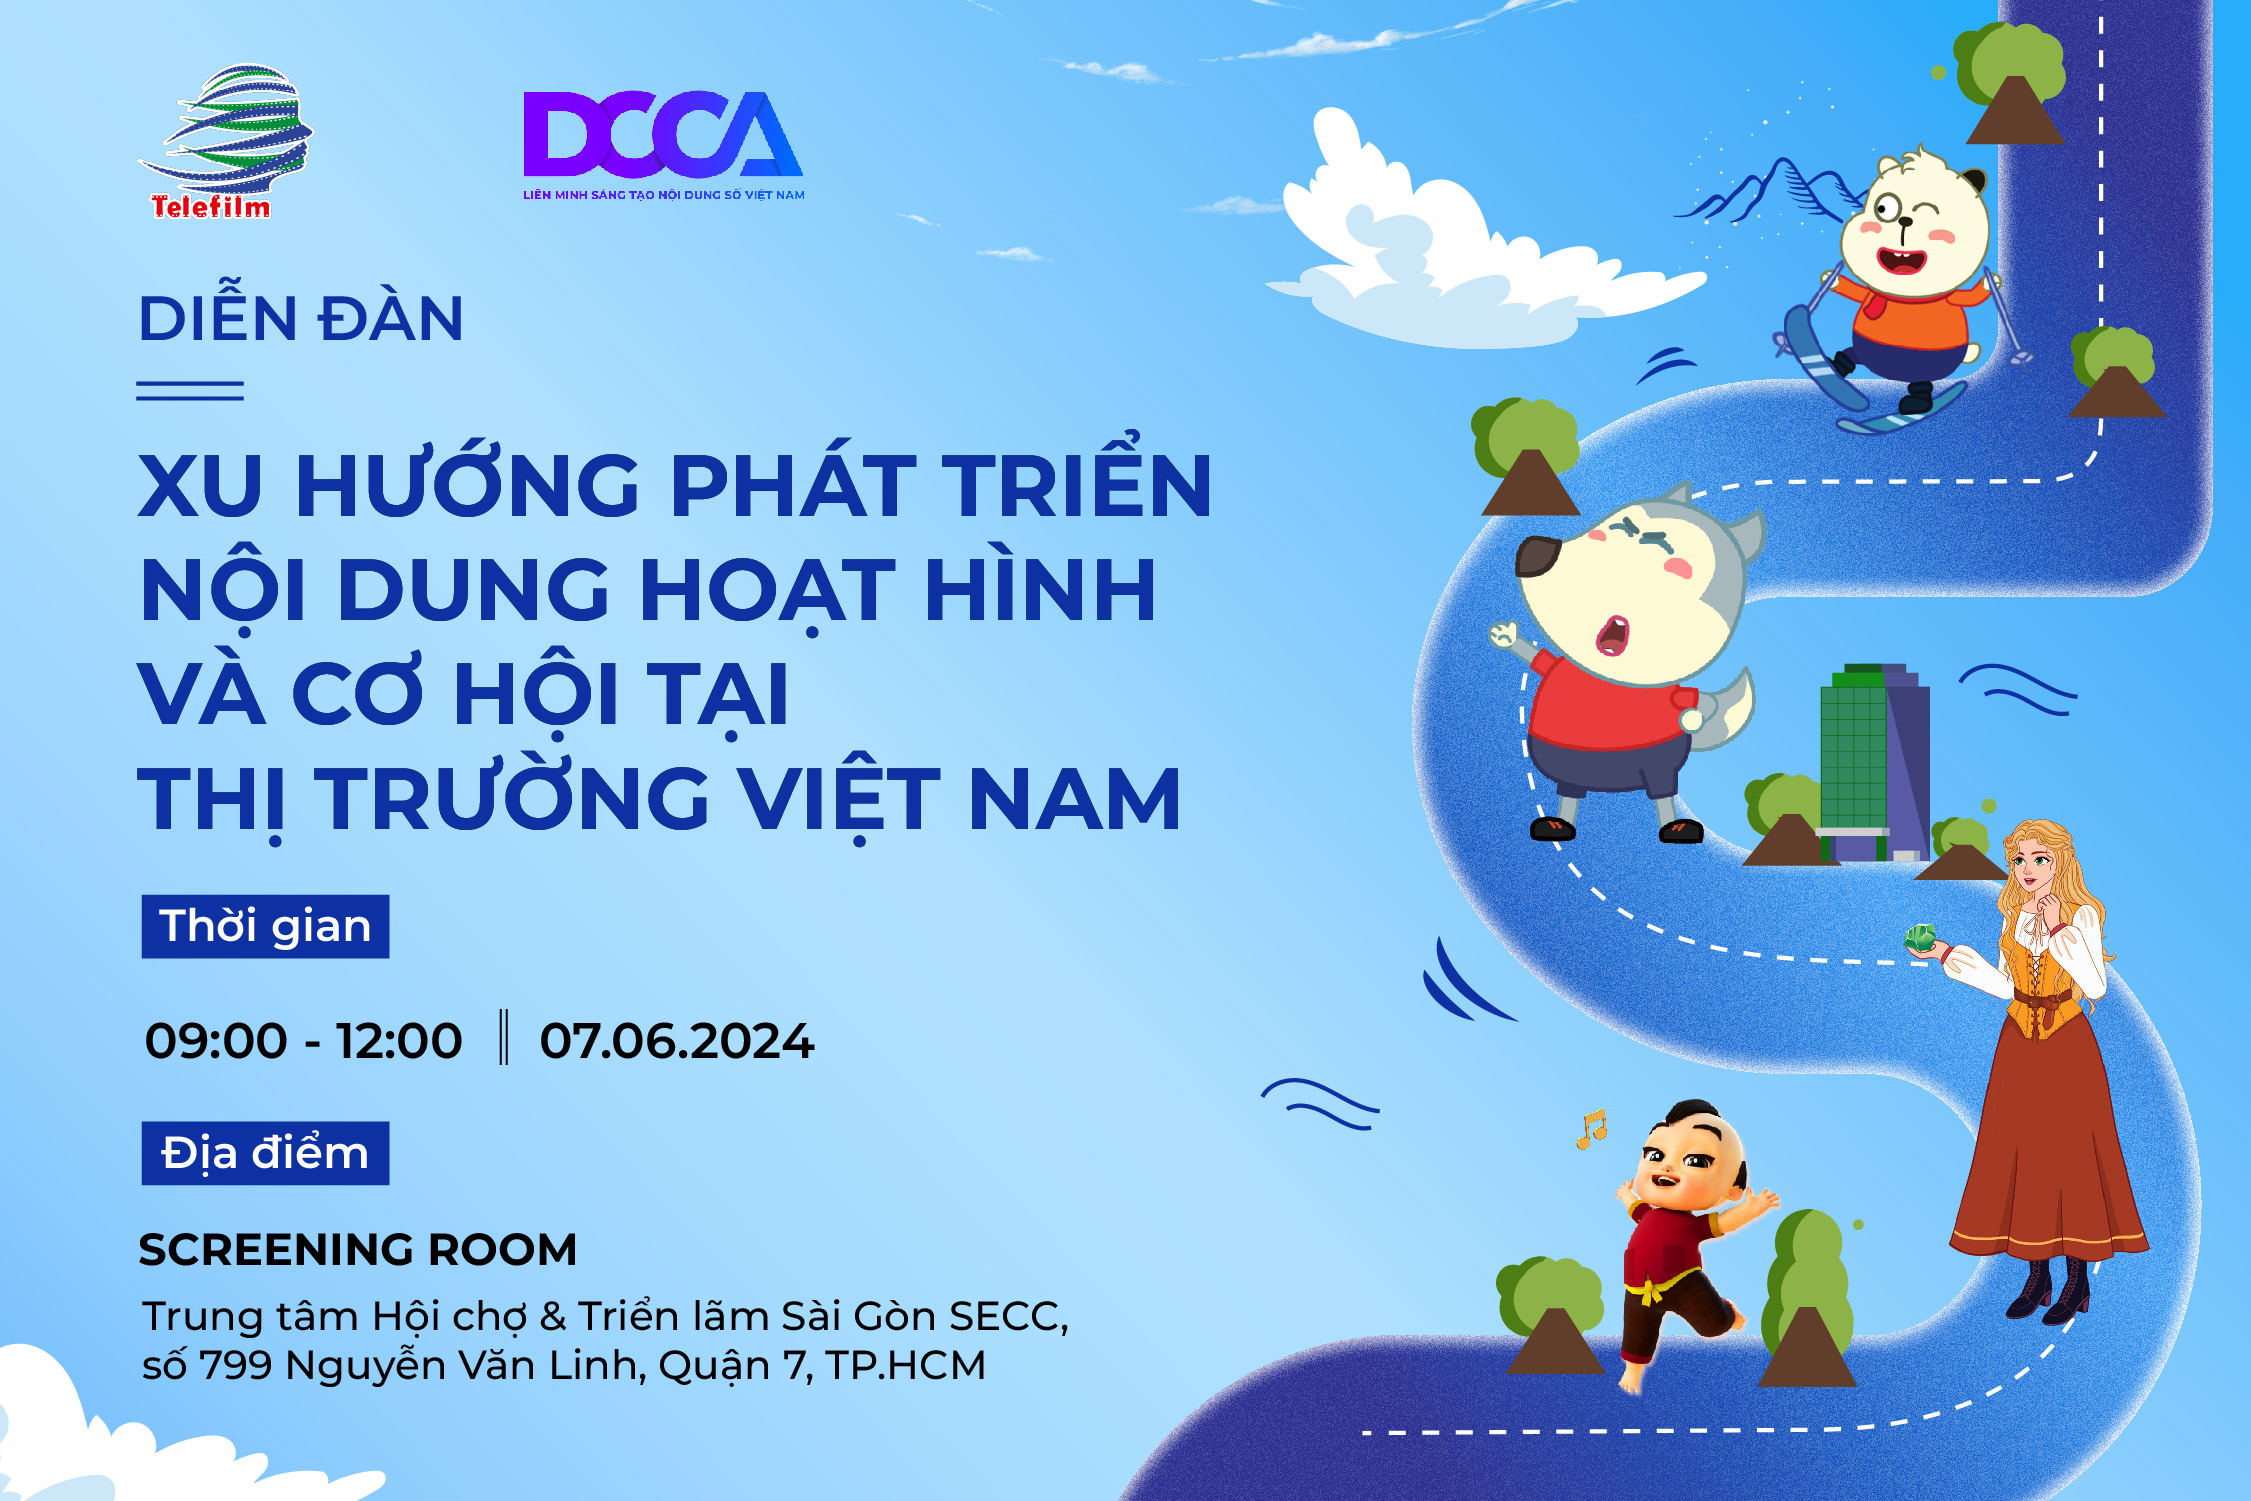 [07/06/2024] Diễn đàn "Xu hướng phát triển nội dung hoạt hình và cơ hội tại thị trường Việt Nam"